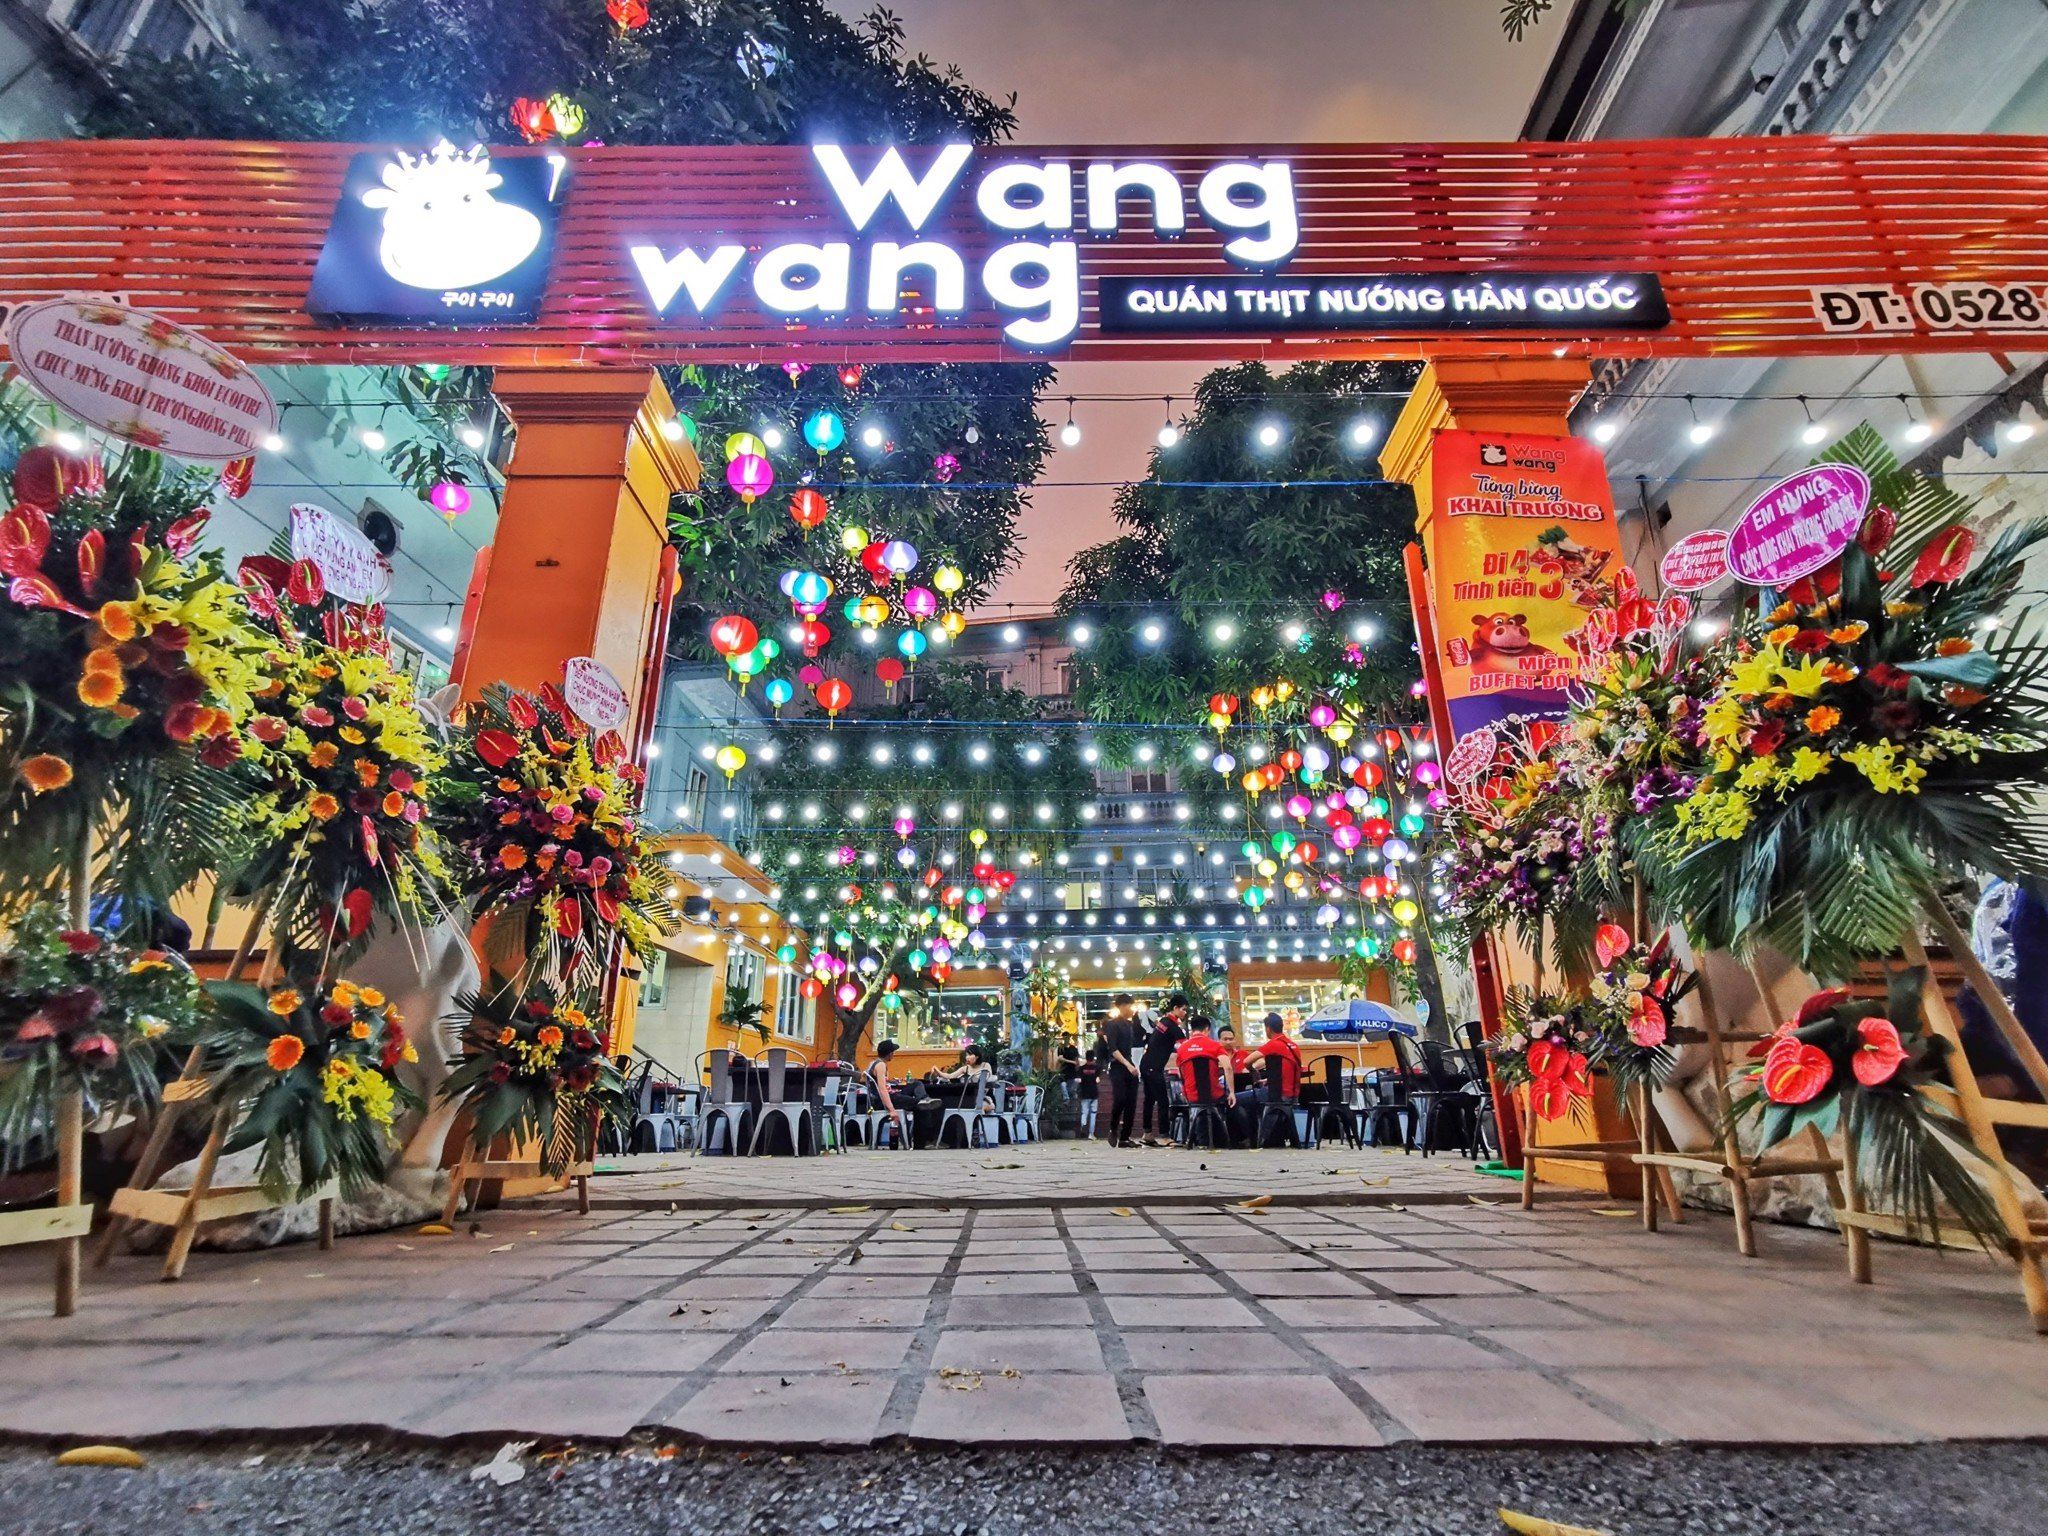 Lẩu Nướng Wang Wang - Hồng Hà